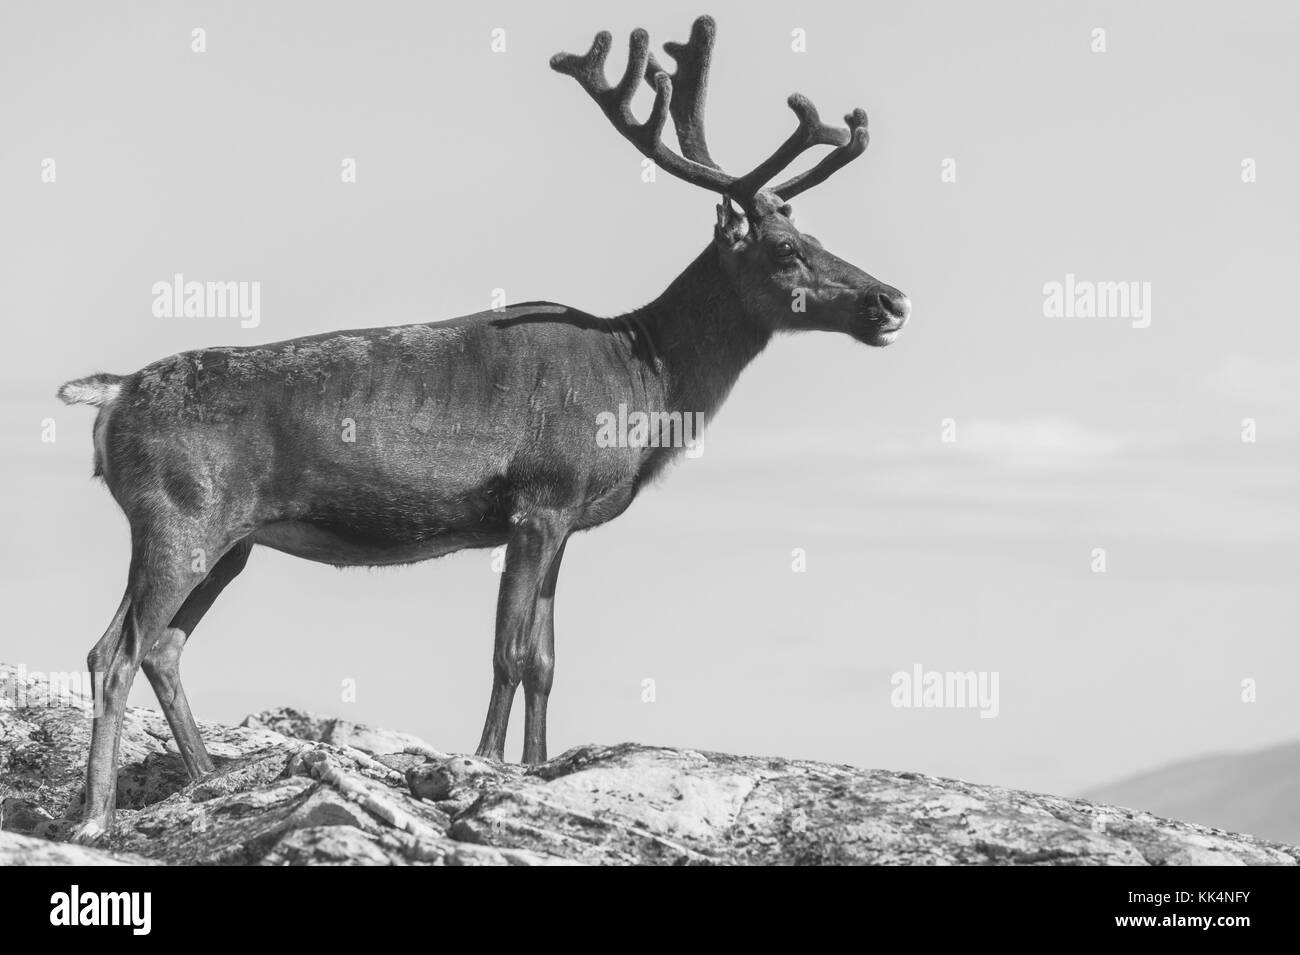 Reindeer in Norway Stock Photo